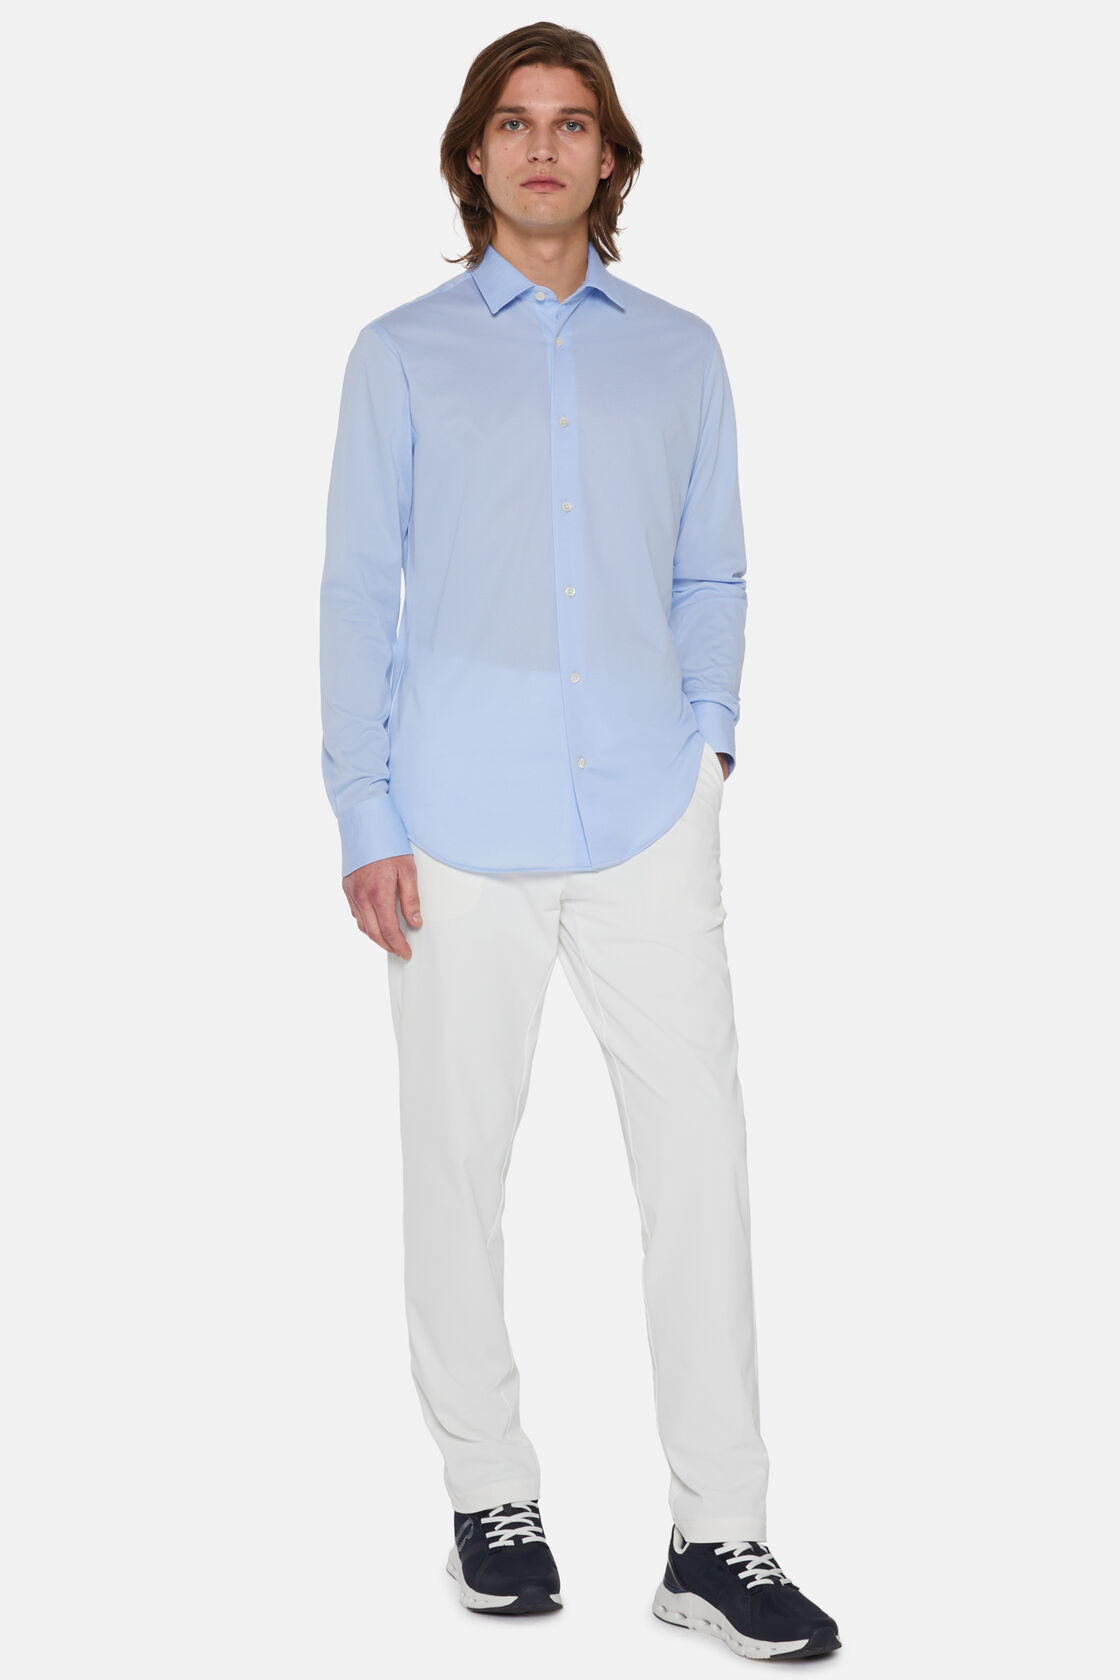 Camisa Celeste De Algodón y COOLMAX® Slim Fit, Azul claro, hi-res